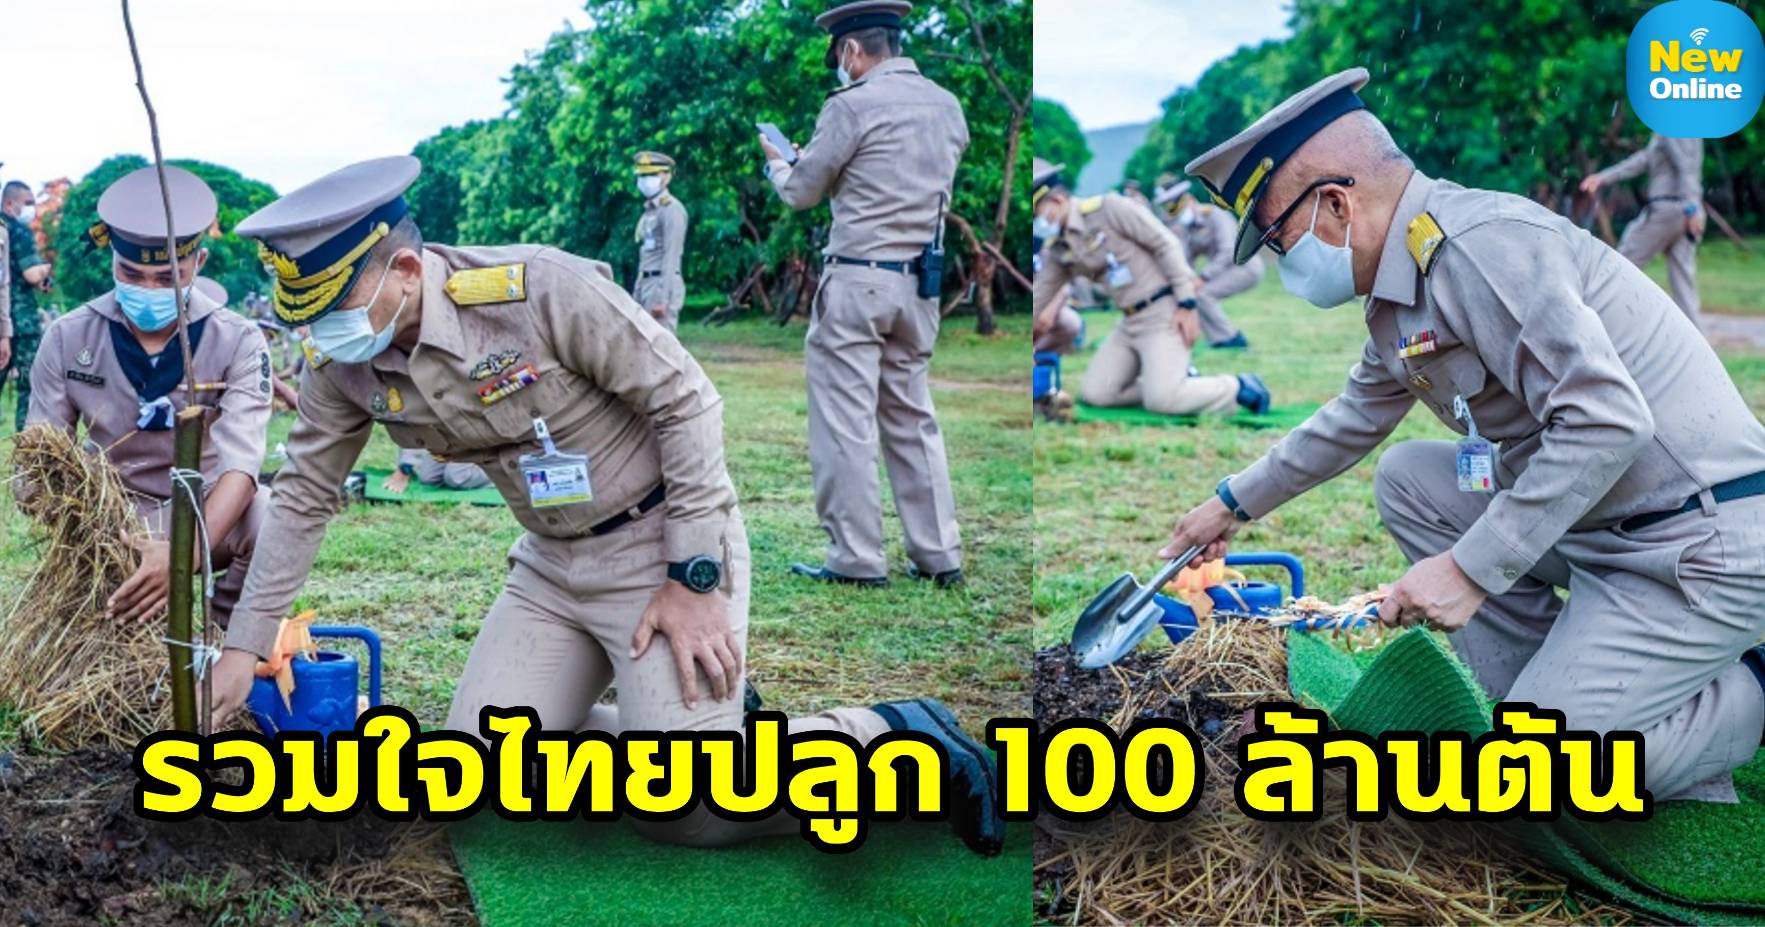 กองเรือยุทธการจัดกิจกรรม “รวมใจไทย ปลูกต้นไม้ เพื่อแผ่นดิน” สืบสานสู่ 100 ล้านต้น